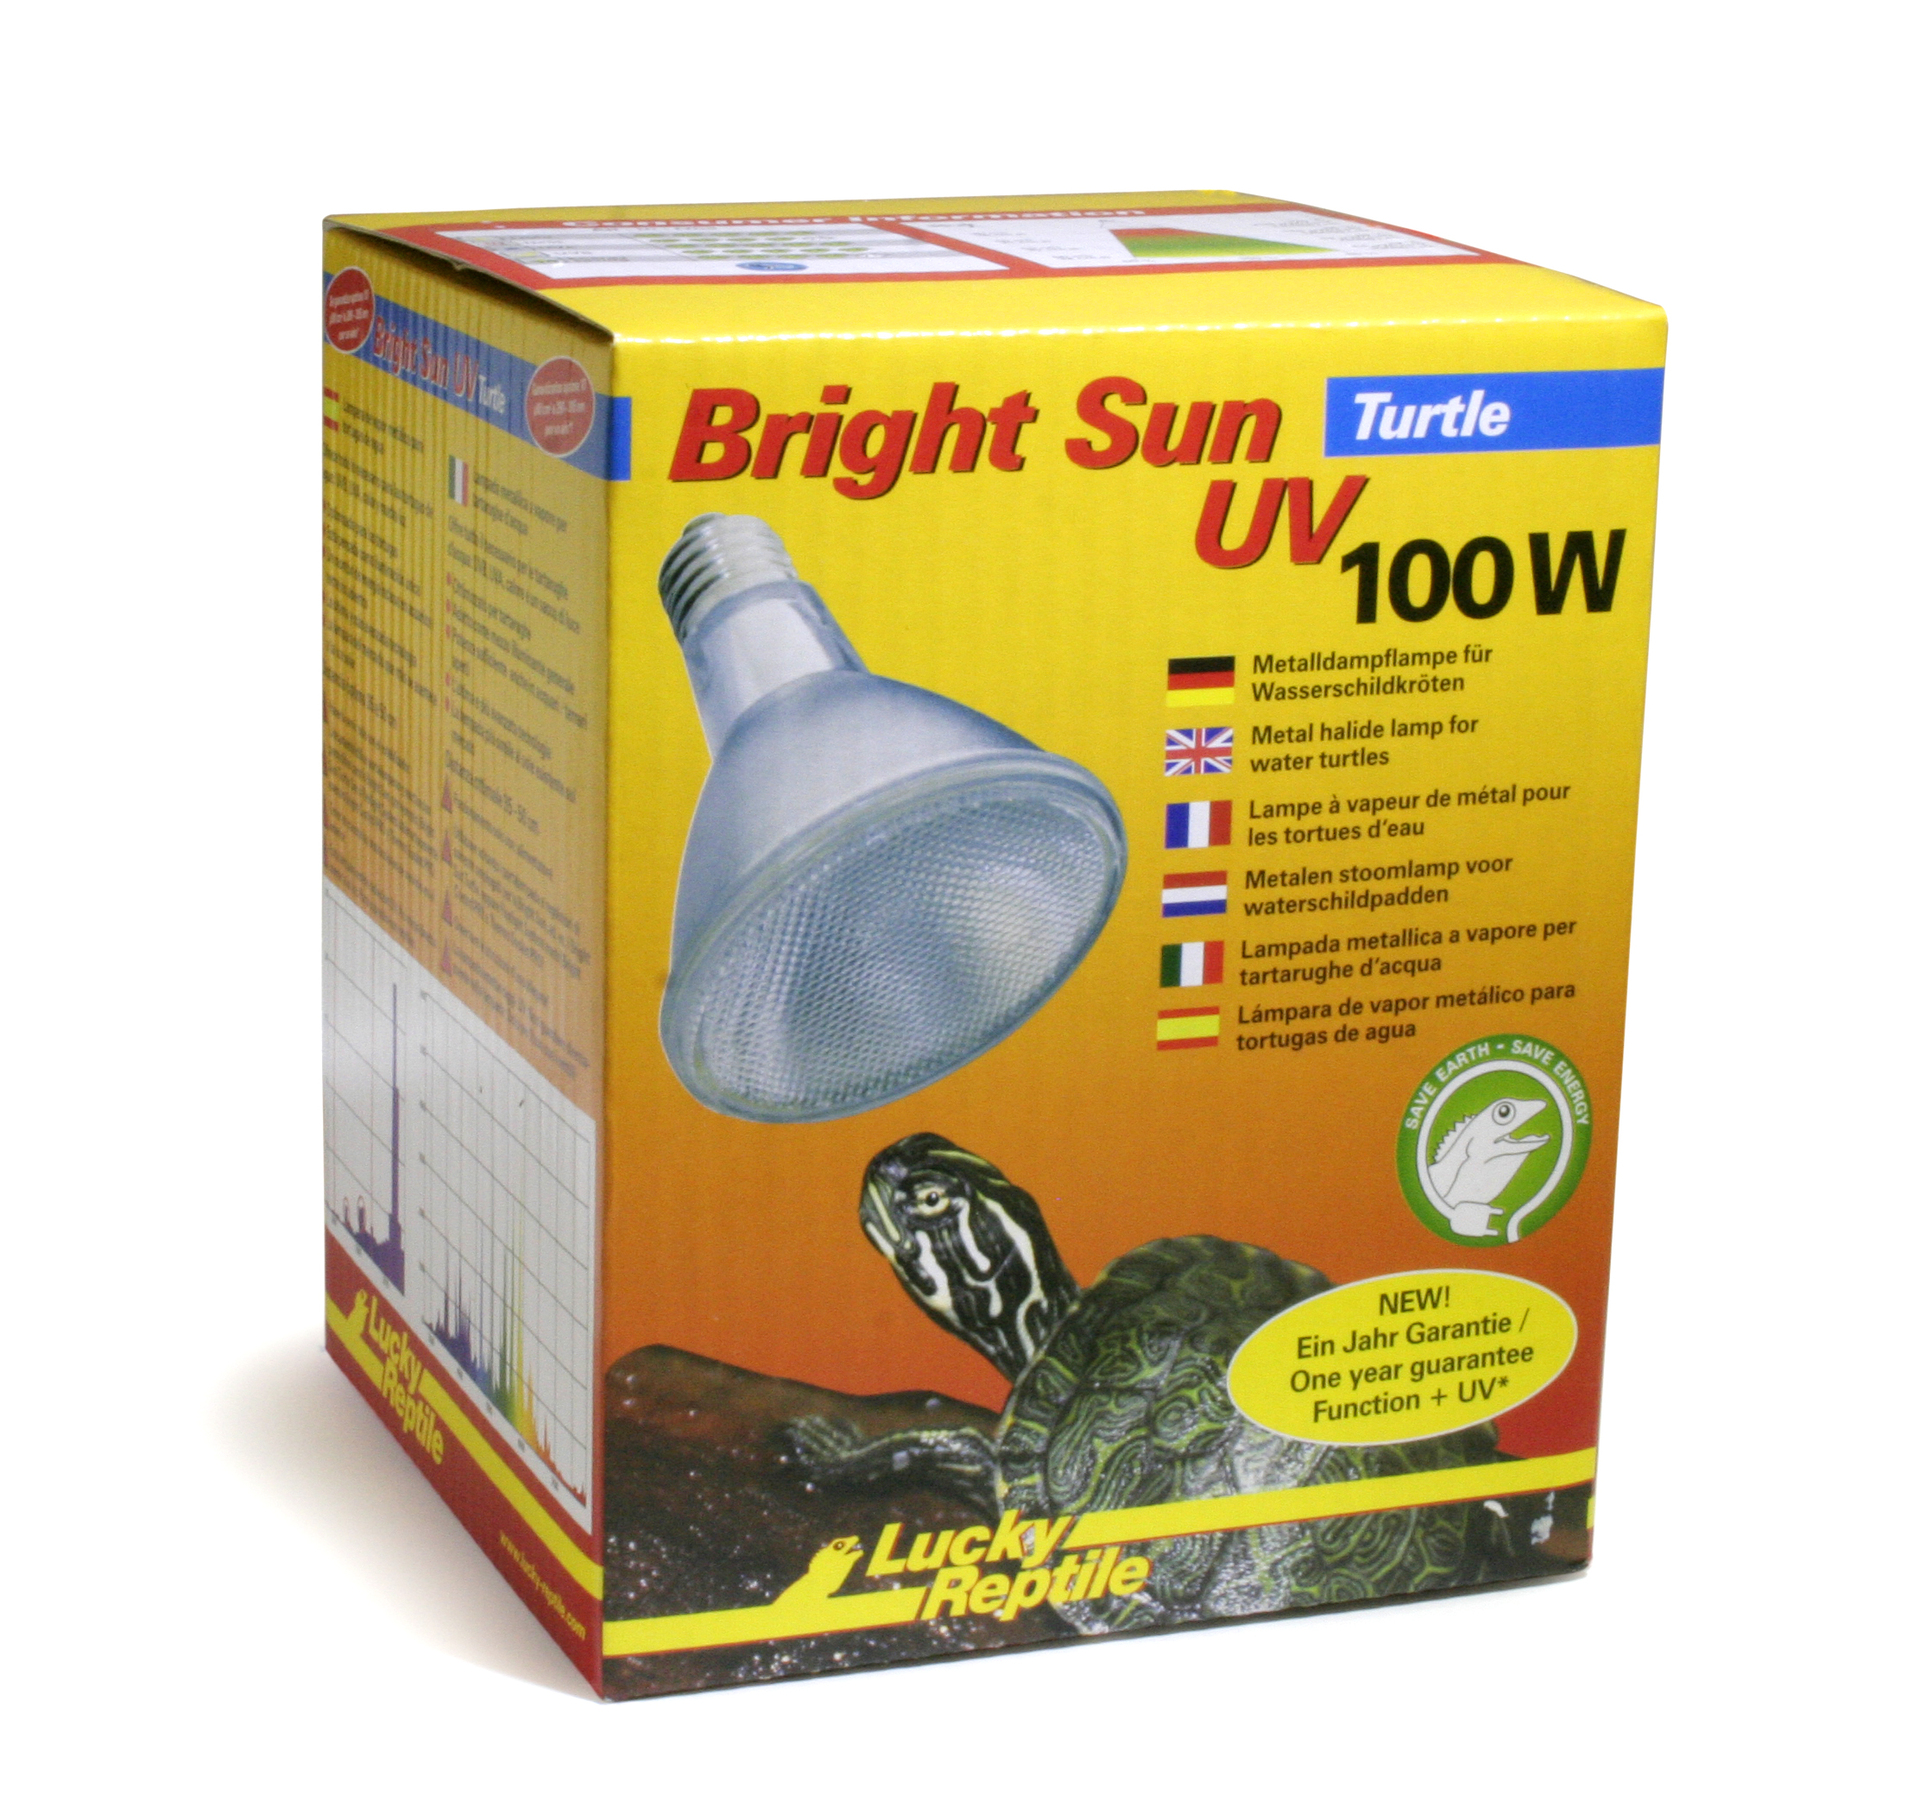 Bright Sun Turtle 100 W